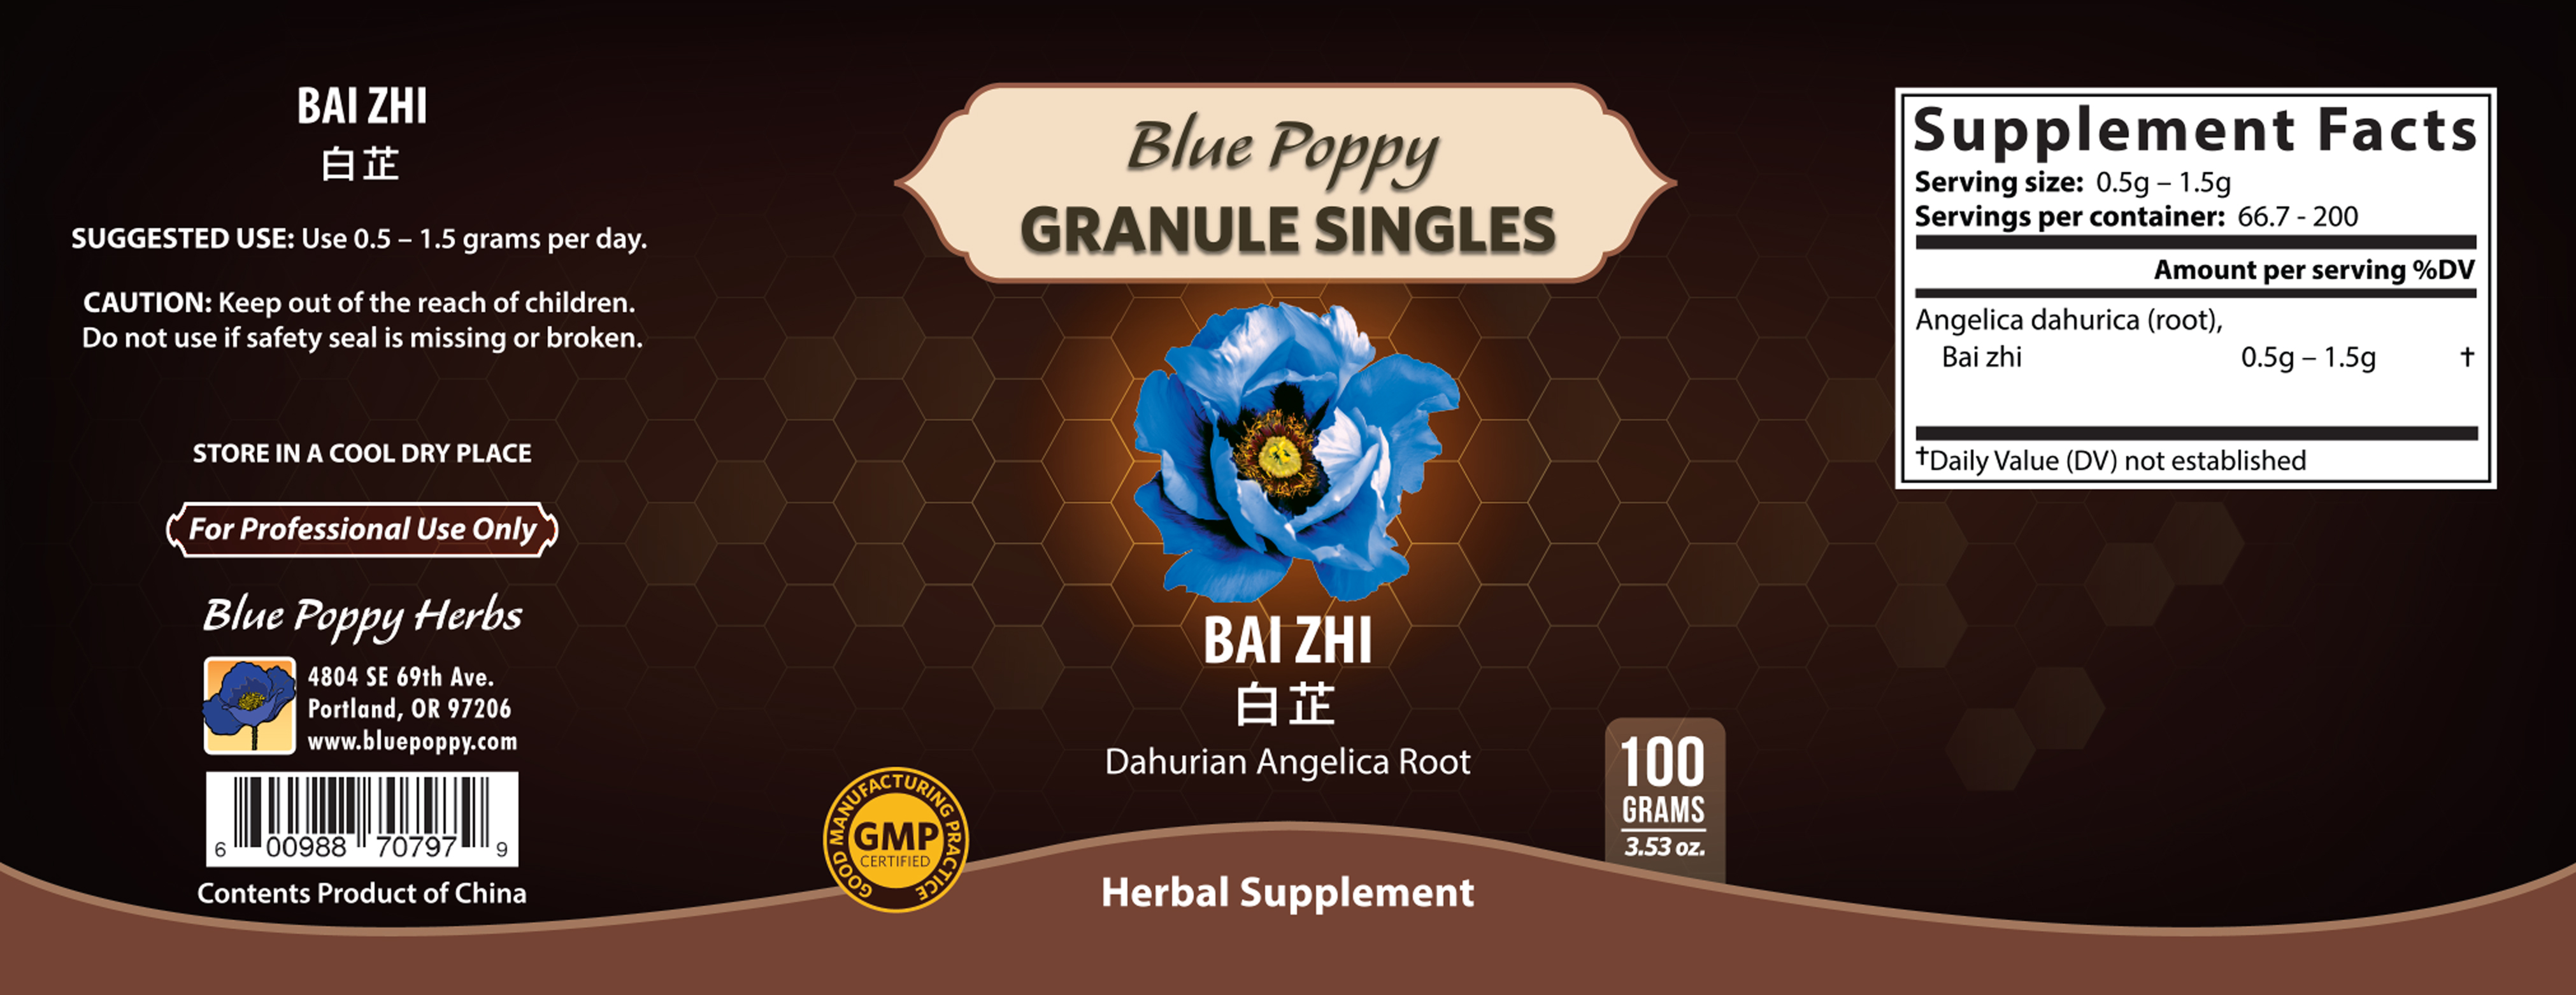 Bai Zhi Granules